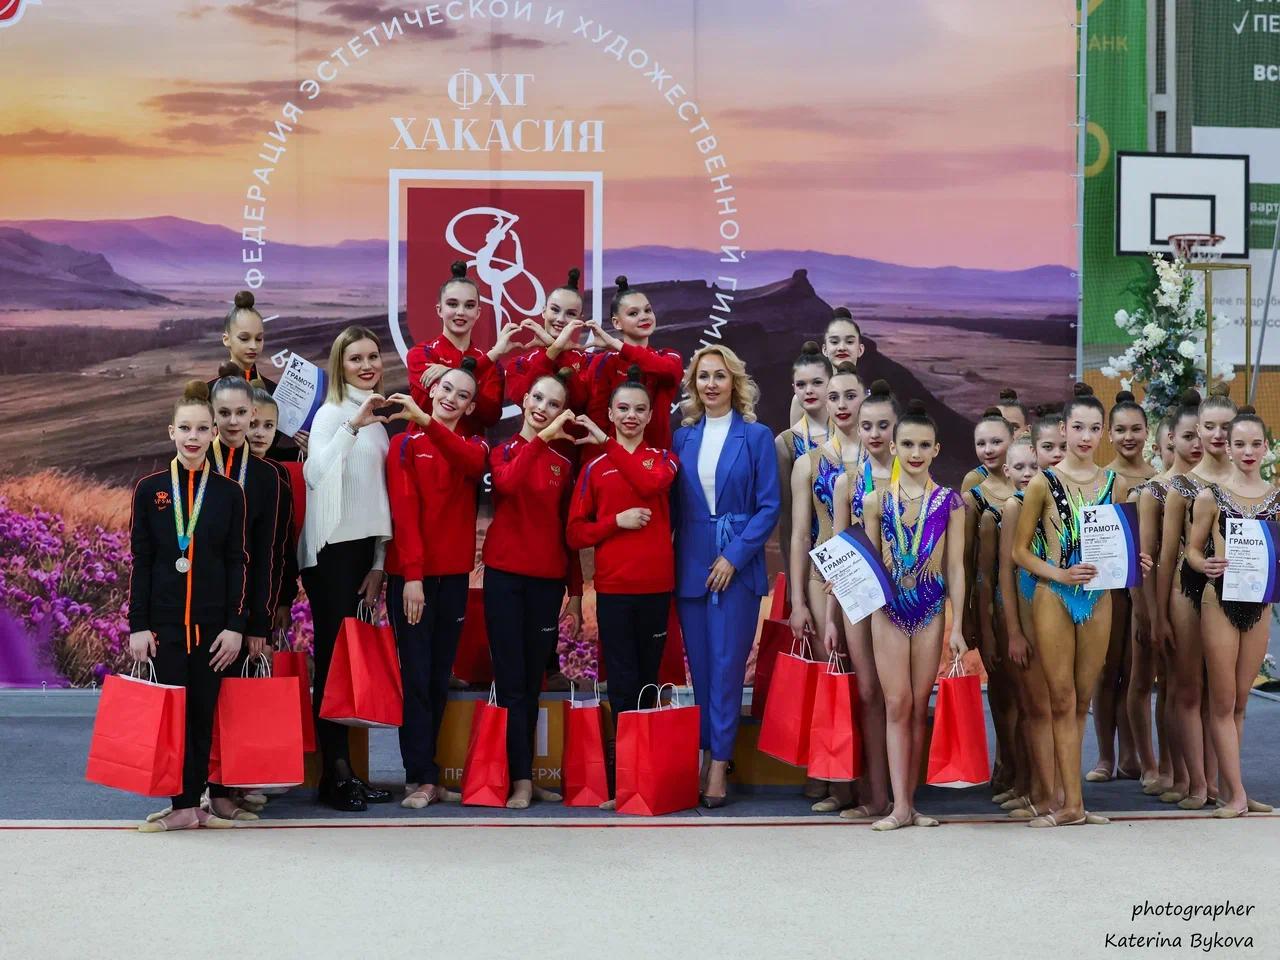 Открытое первенство по спортивной гимнастике пройдет в Хакасии